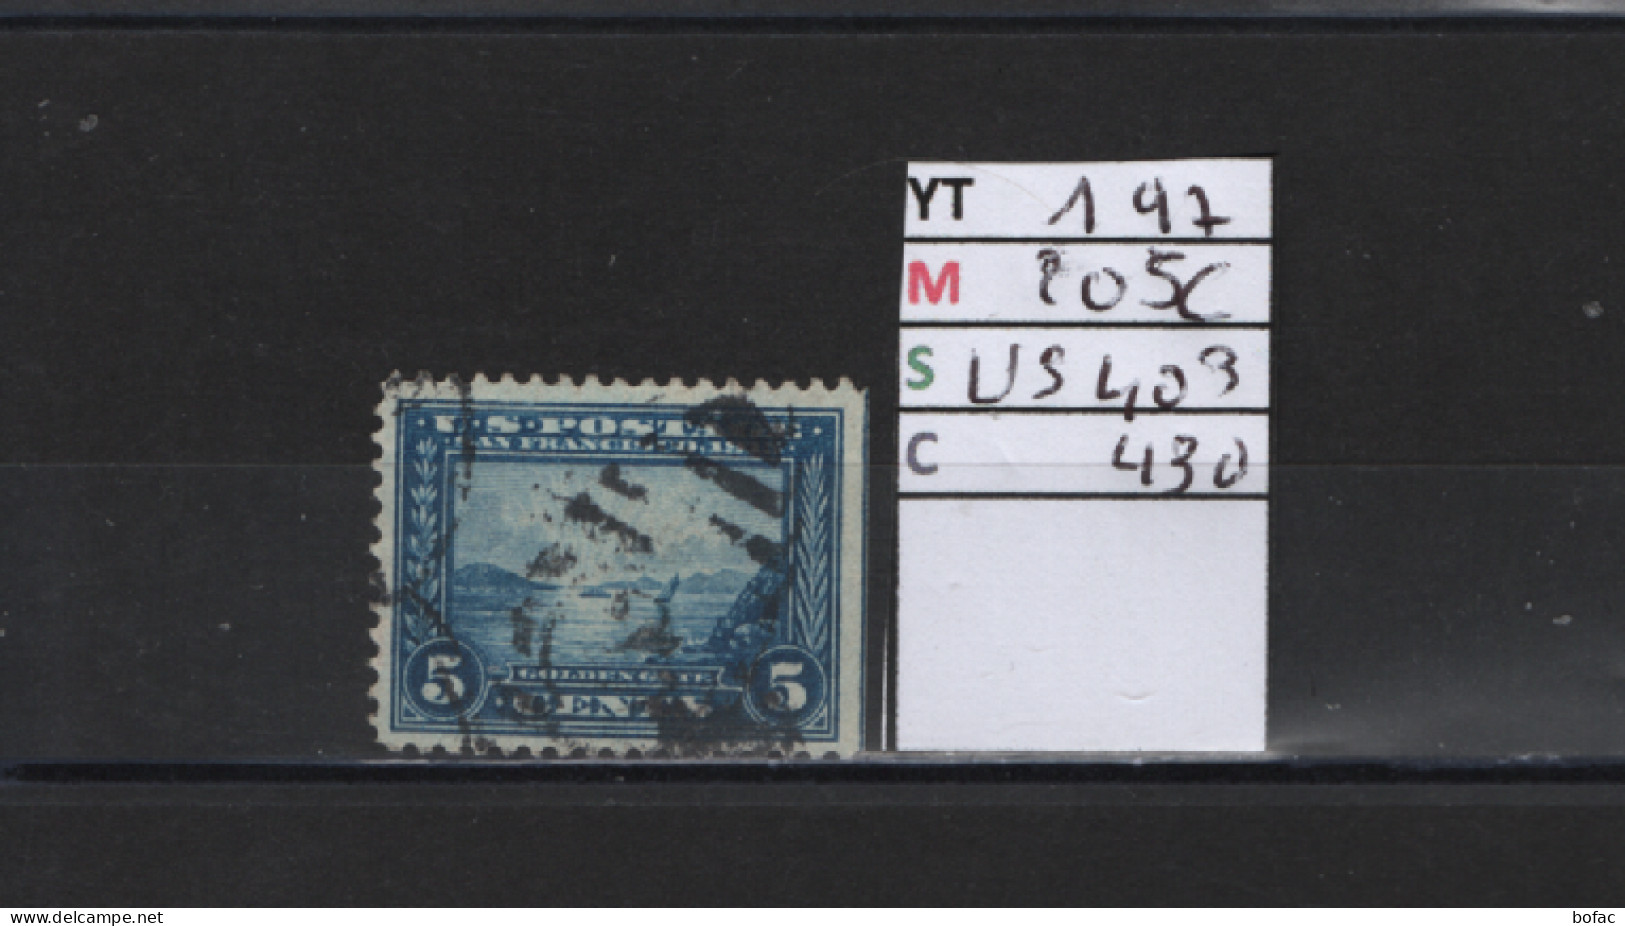 PRIX FIXE Obl 197 YT 205C MIC US403 SCOT US430 GIB San Francisco 1912 1915 Etats Unis 58/06 Dentelé 3 Cotés - Used Stamps